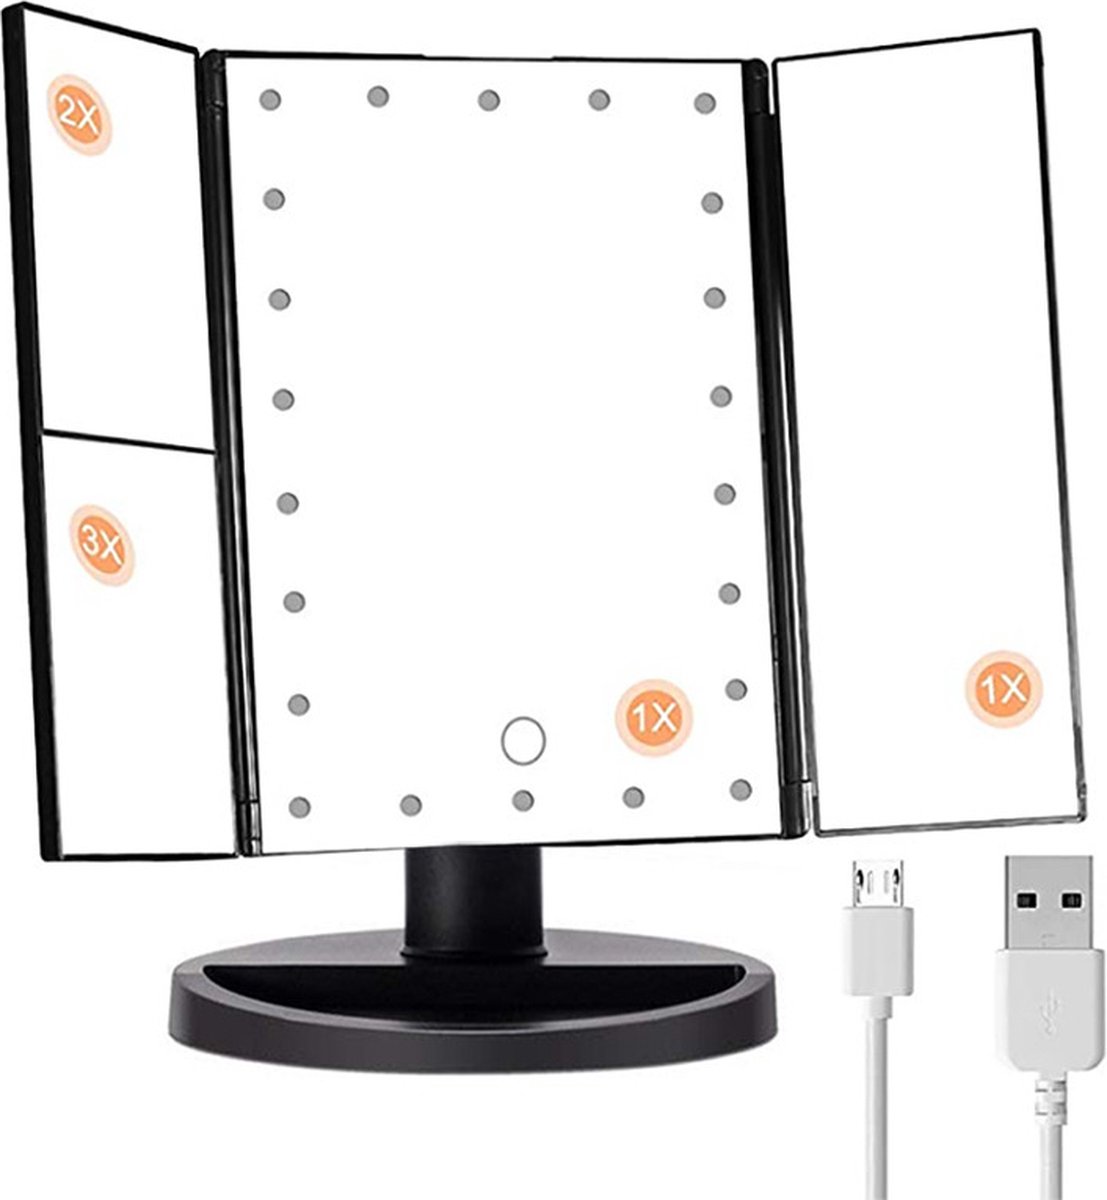 22 LED- Make-up spiegel met USB kabel of batterij - Uitklapbaar ZWART